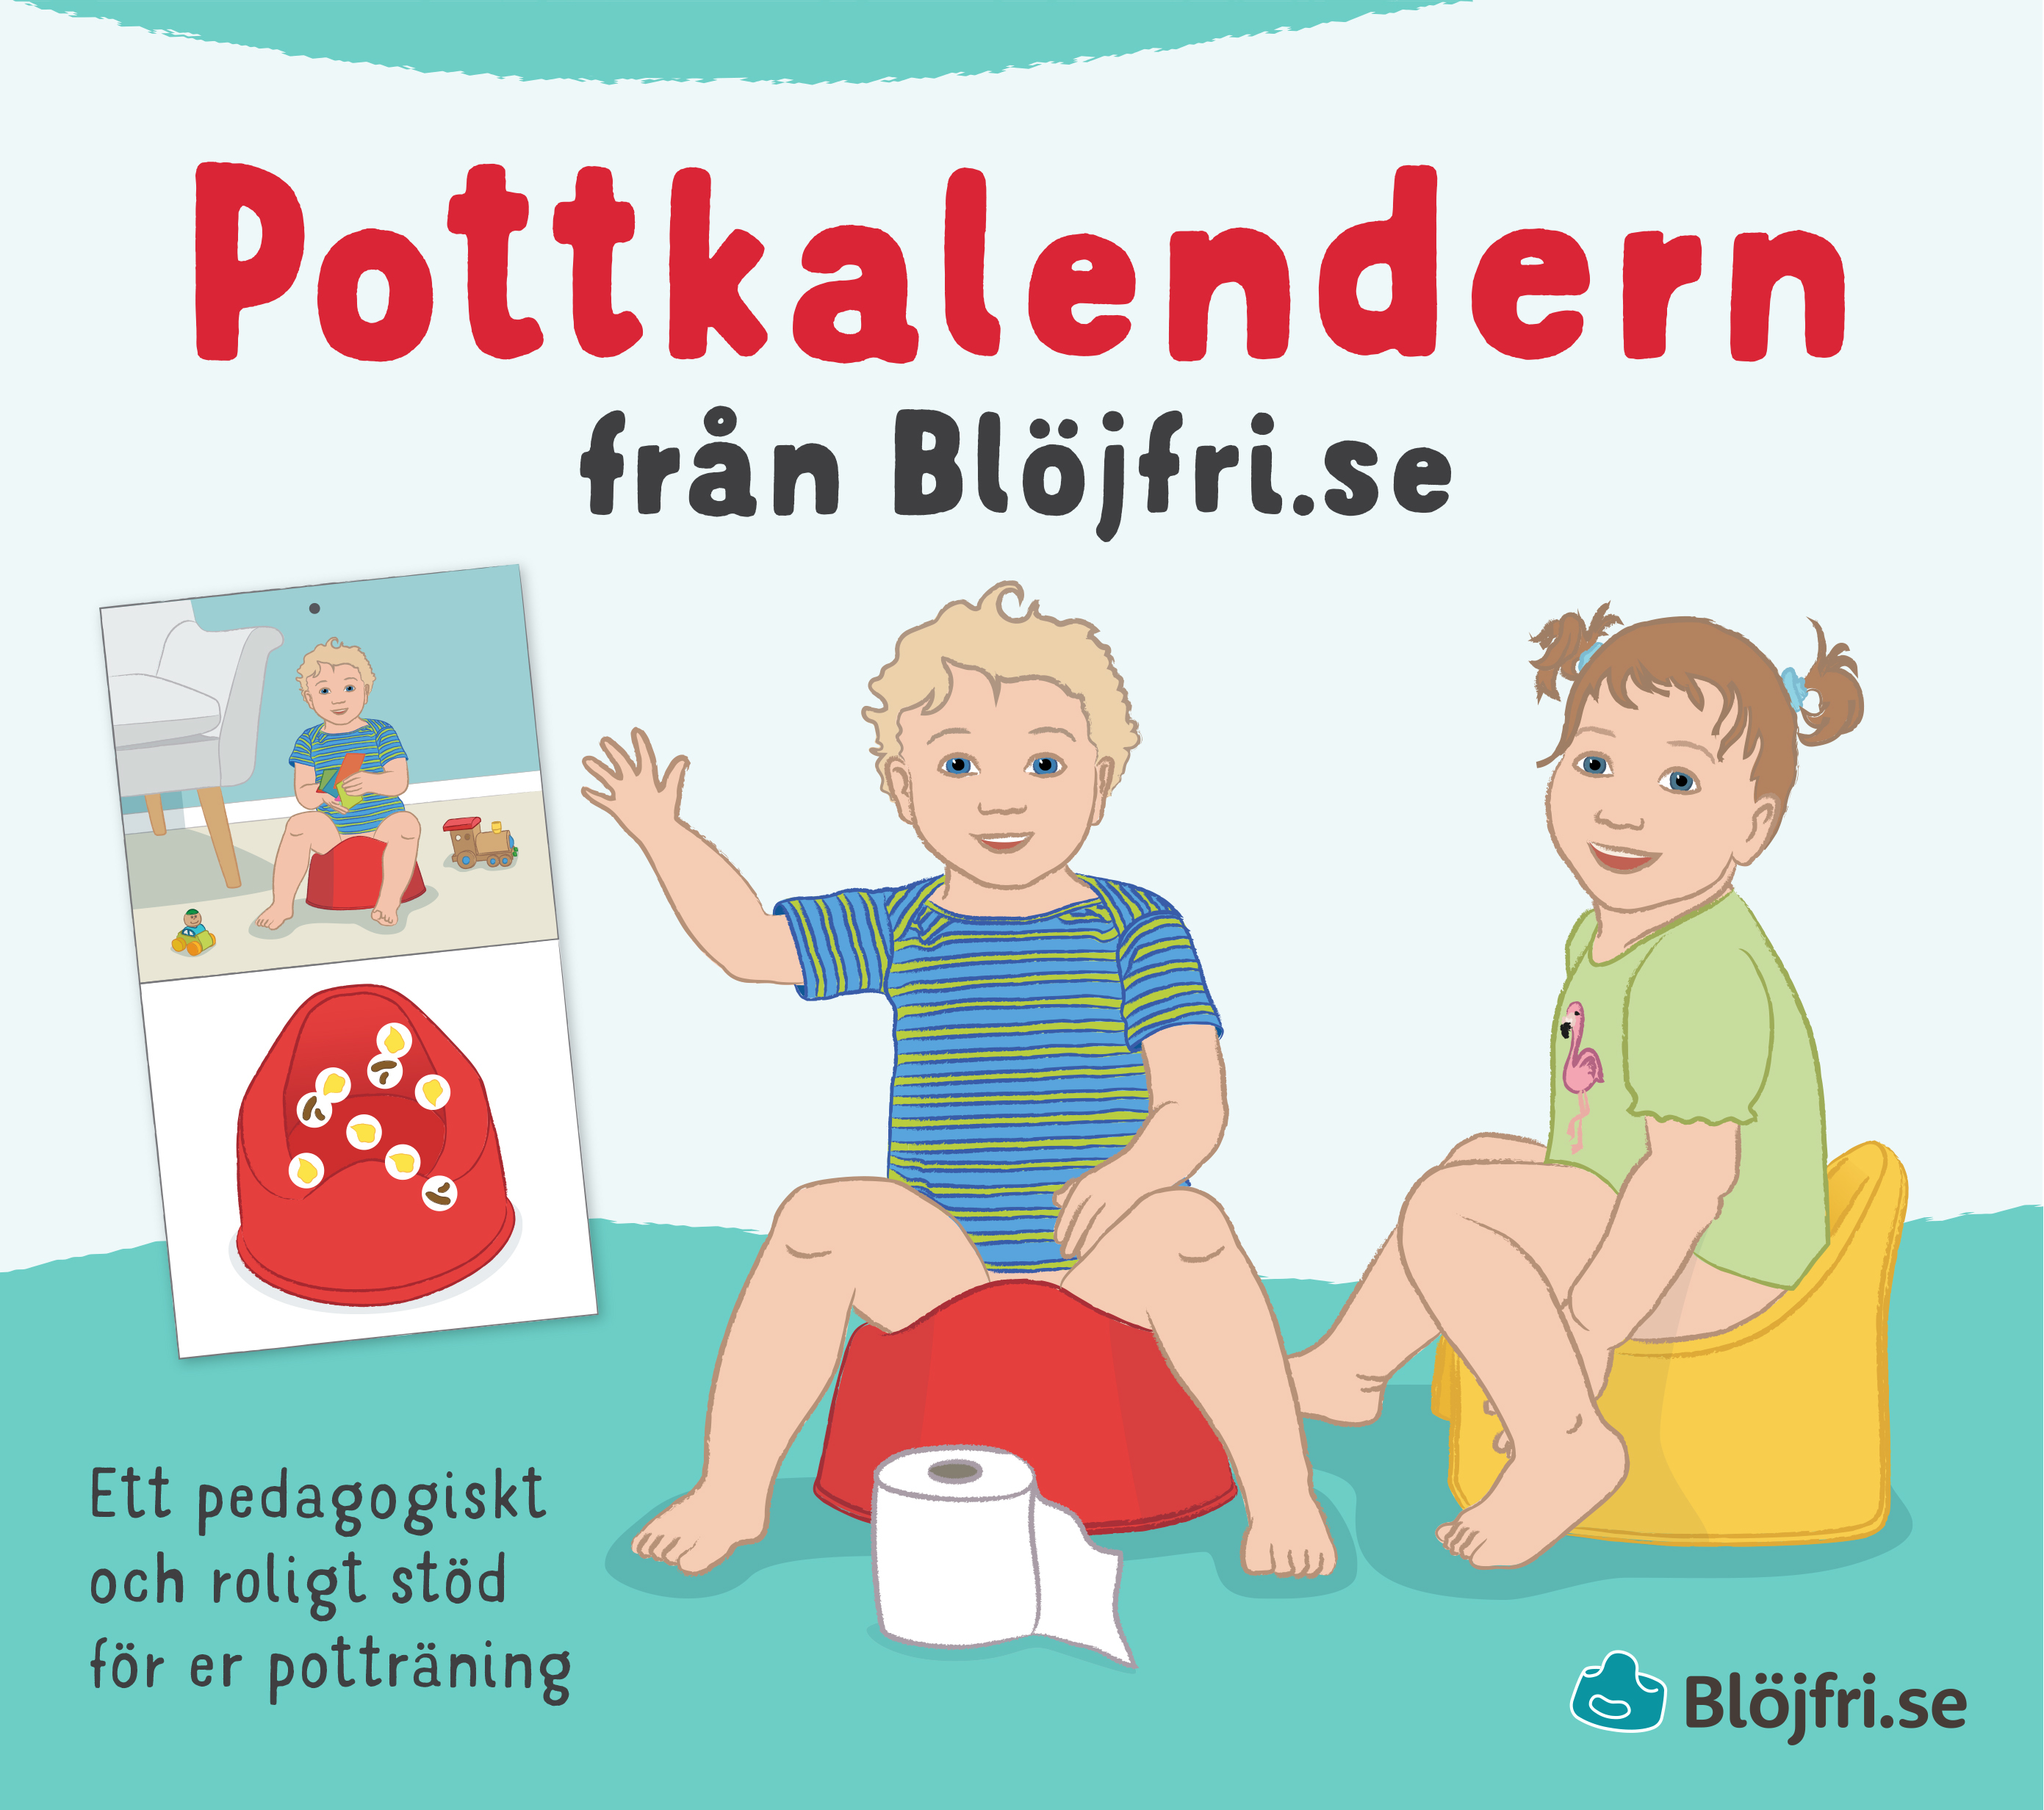 Pottkalendern från Blöjfri.se